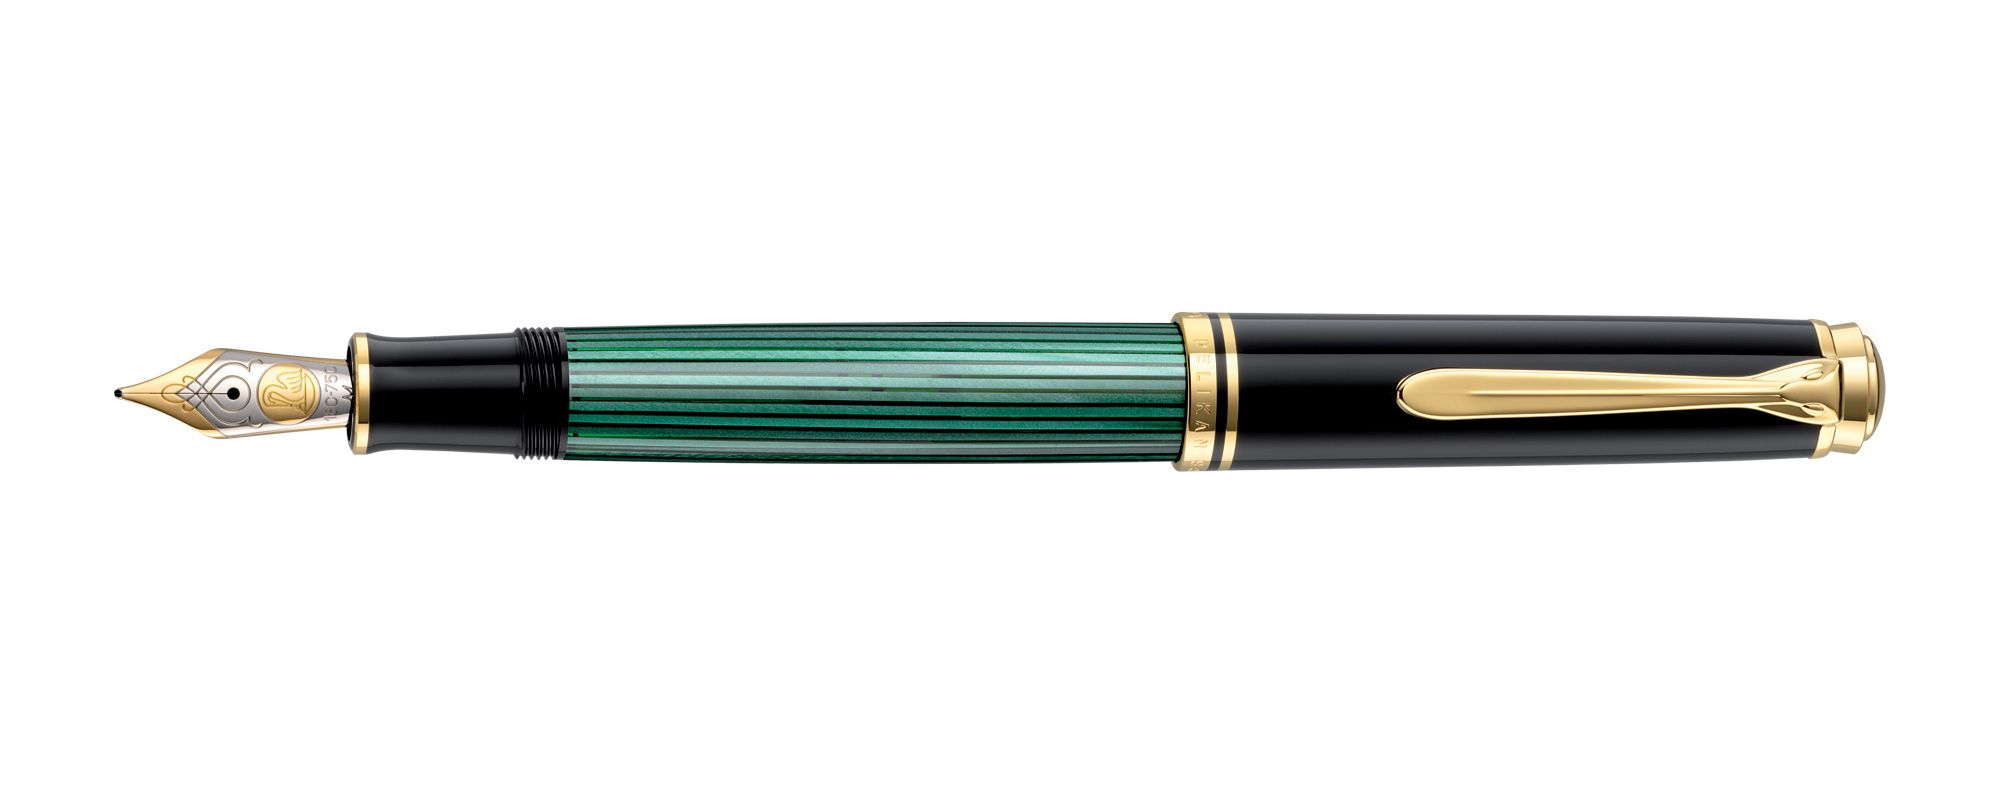 Pelikan Penna Stilografica Souverän M1000 pennino in oro bicolore - Vendita  Online - Lazzaroni Penne